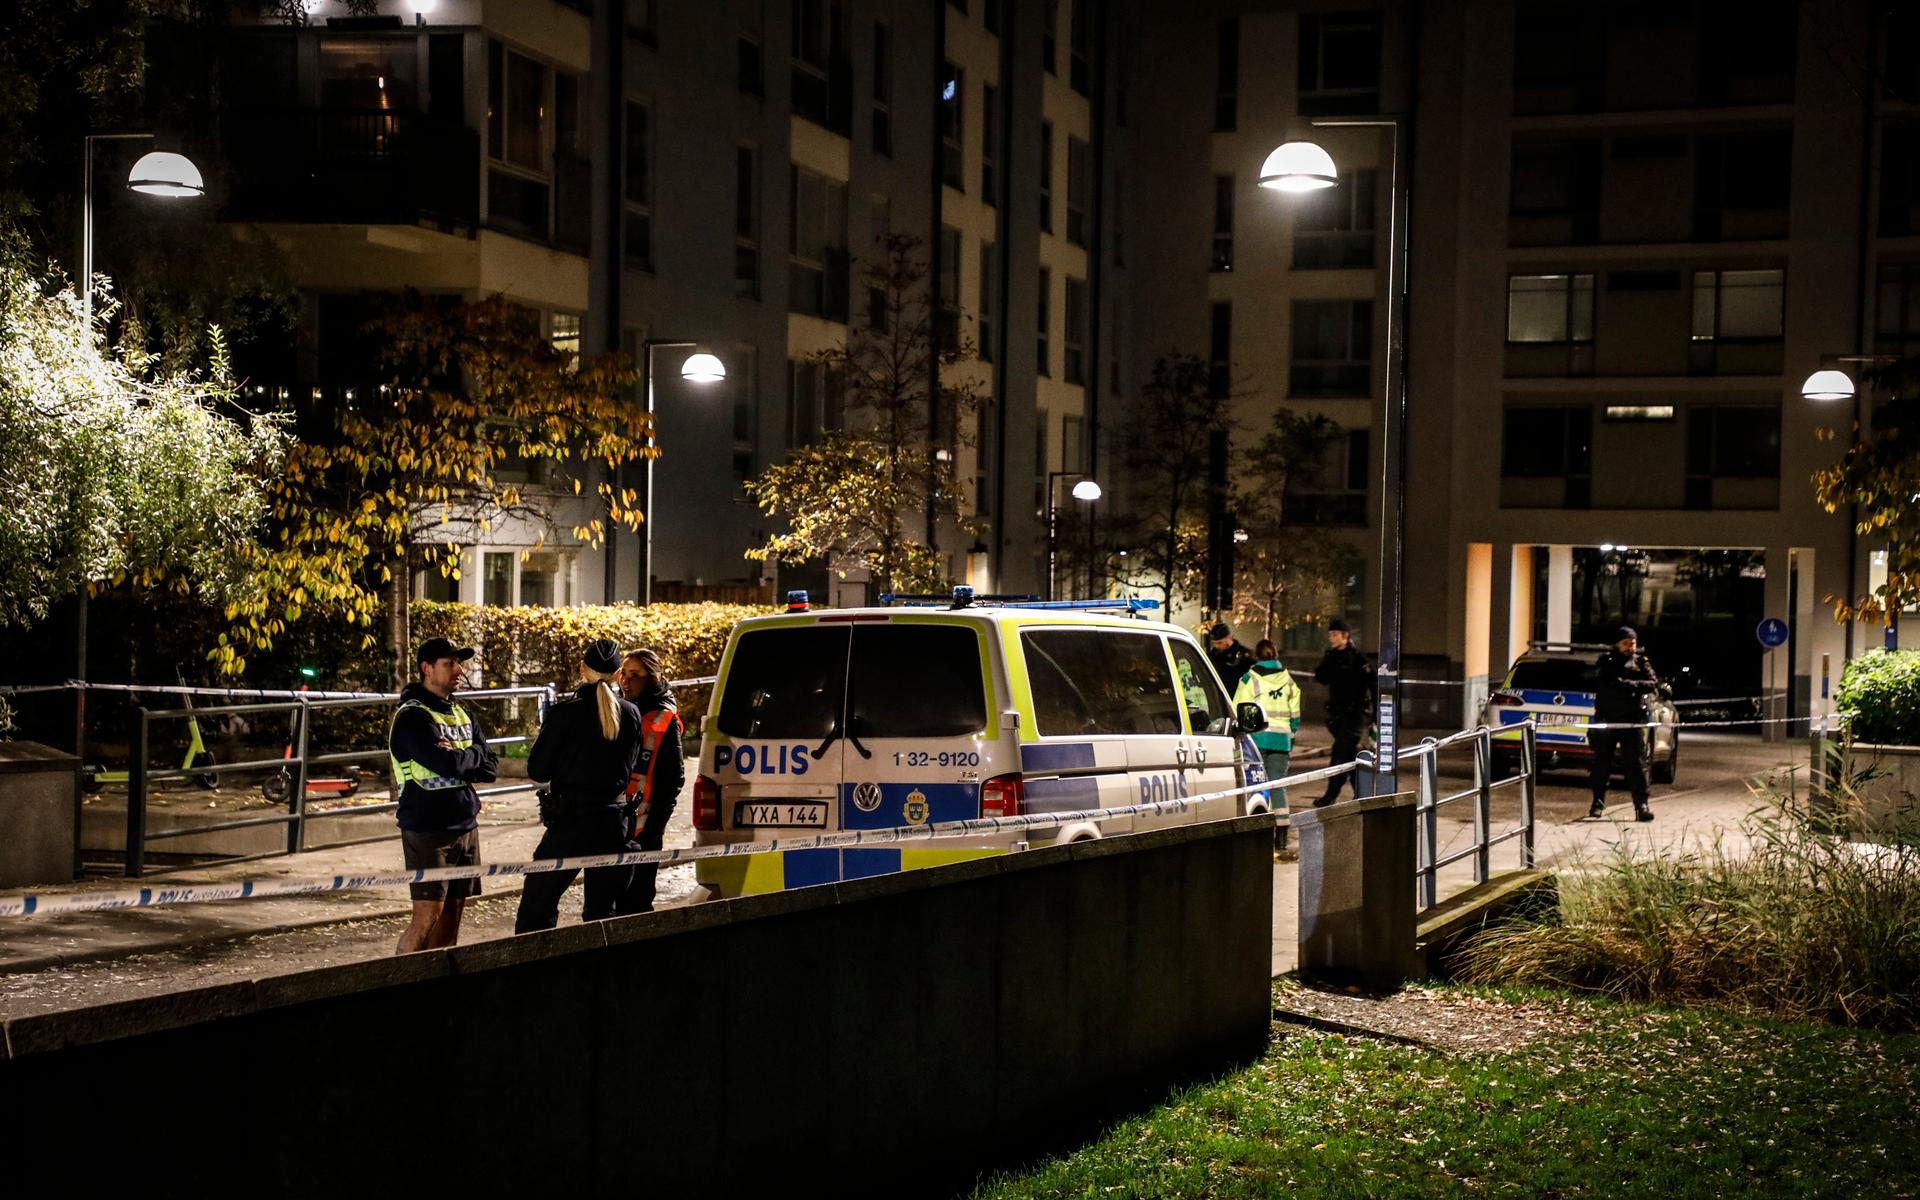 Sent på torsdagskvällen sköts rapparen Einár till döds i Hammarby sjöstad, Stockholm. 